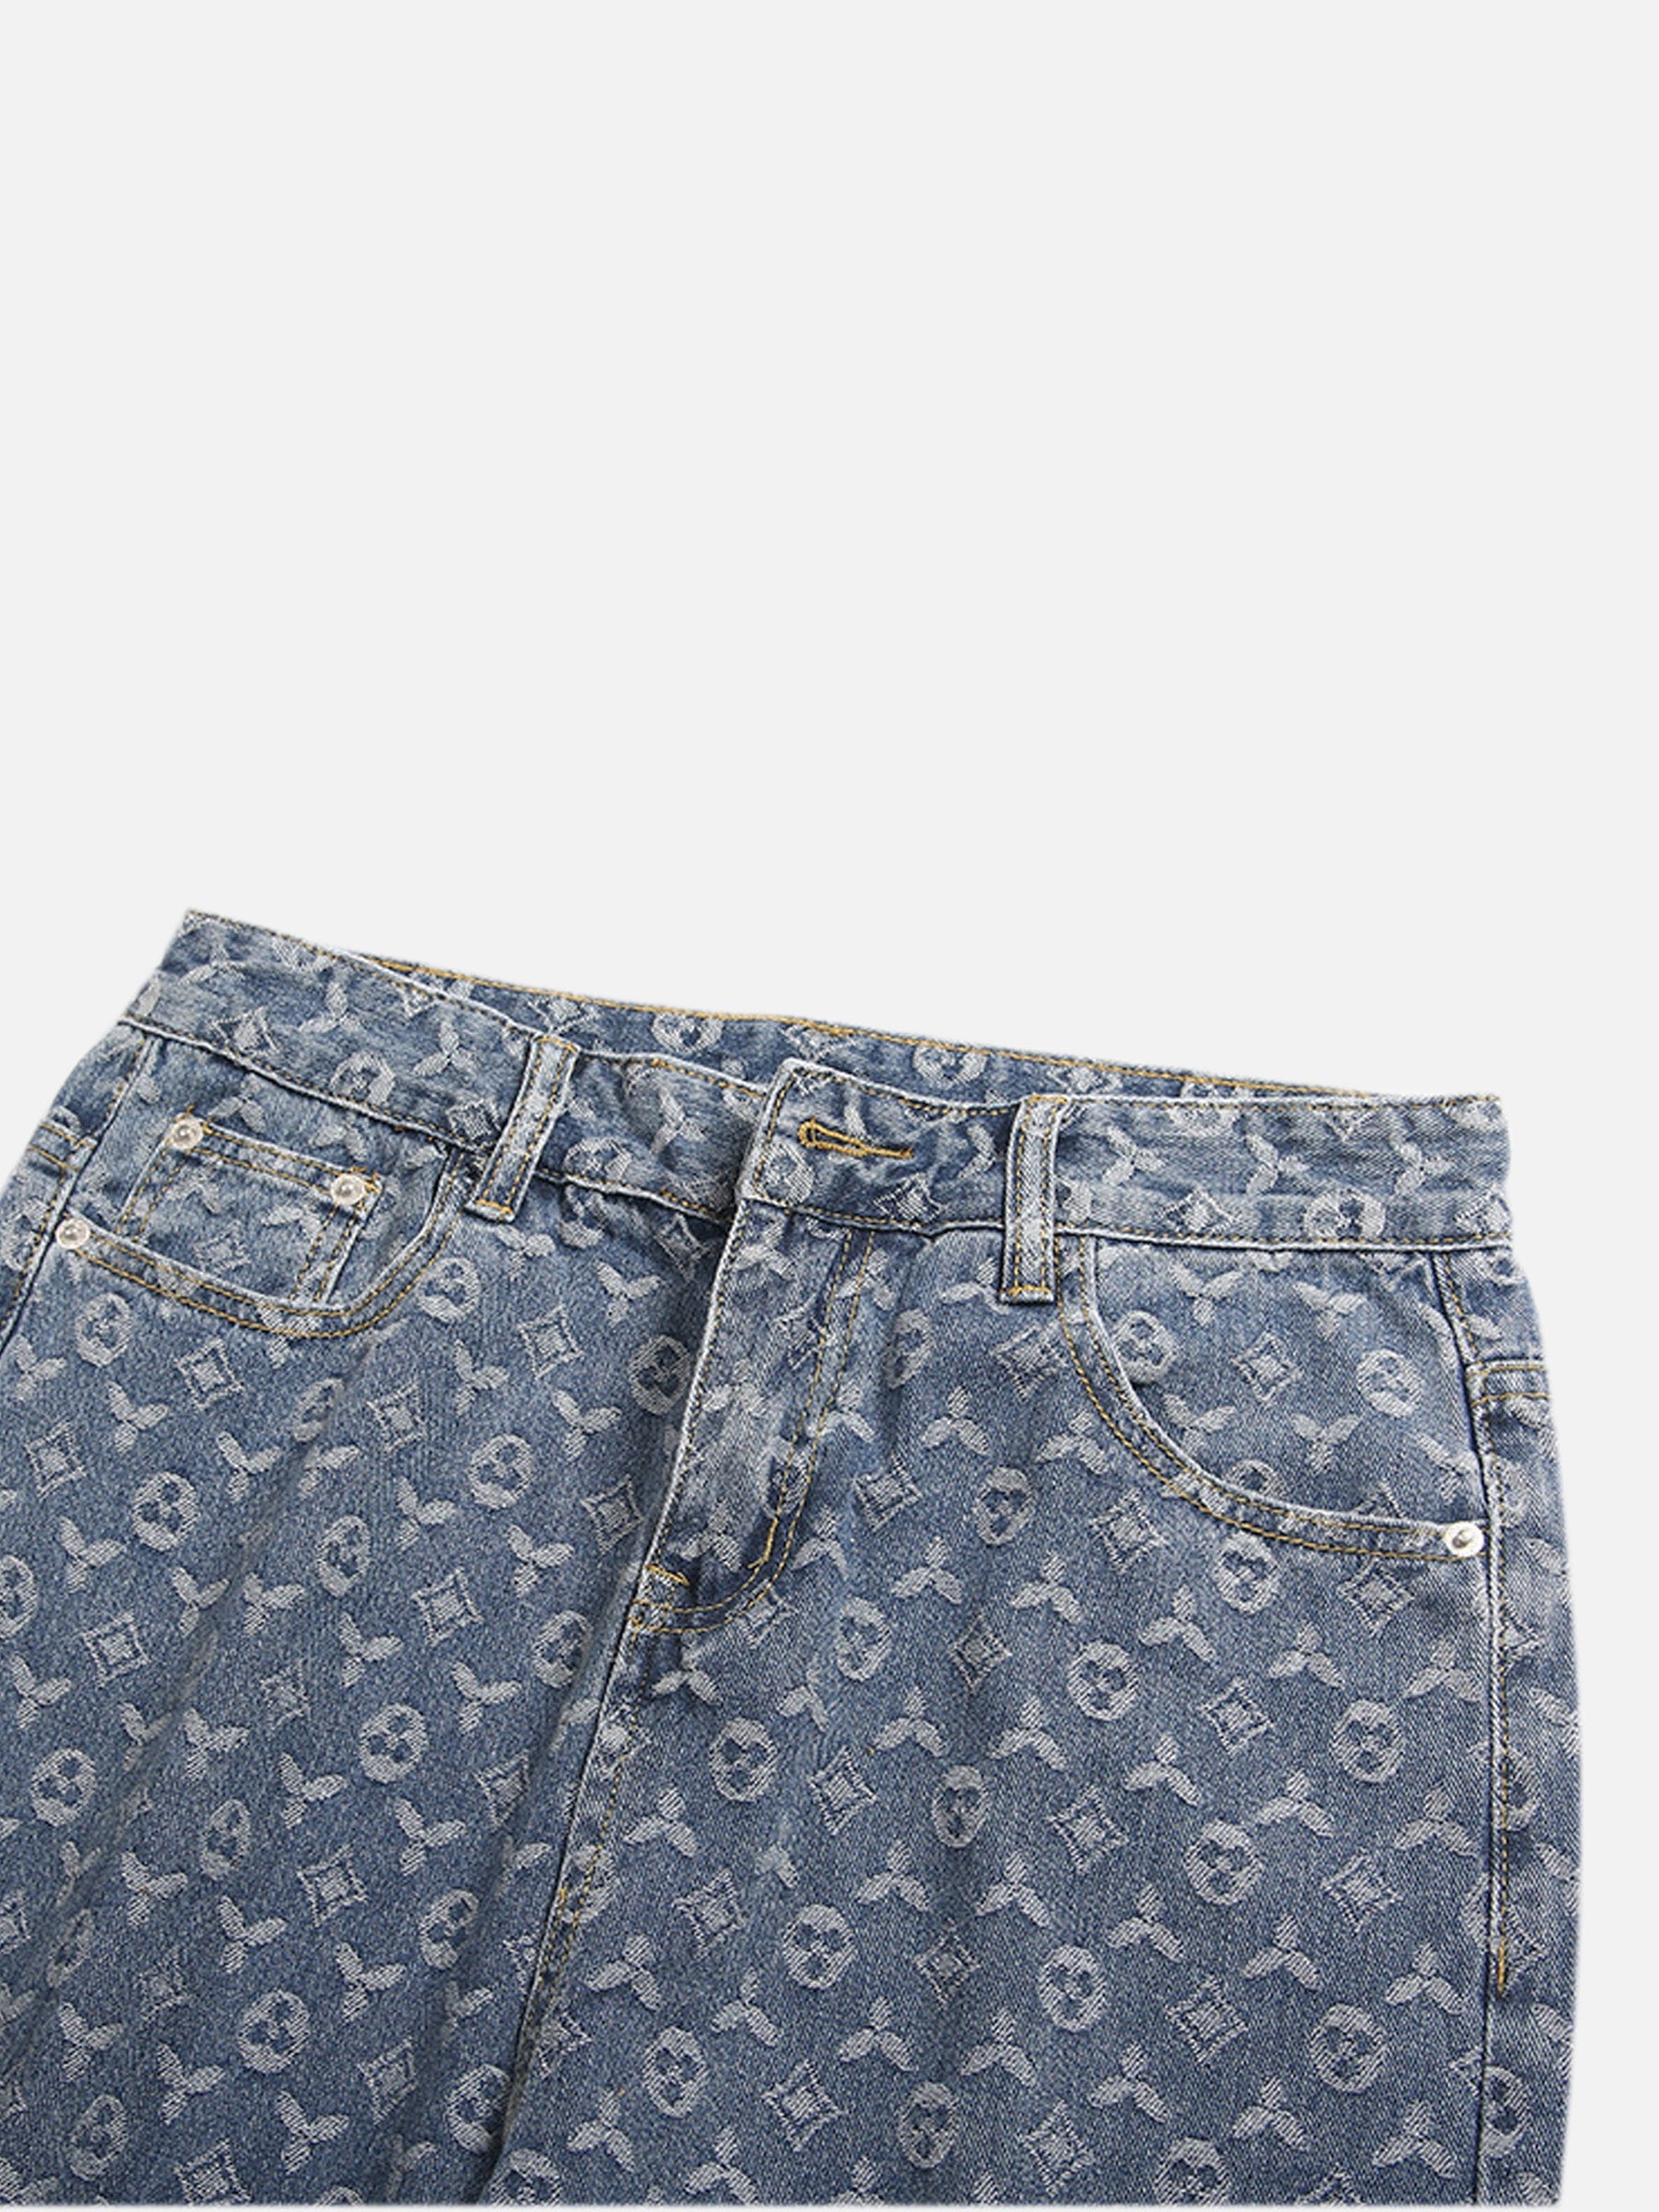 LUXENFY™ - High Street Jacquard Denim Jeans luxenfy.com